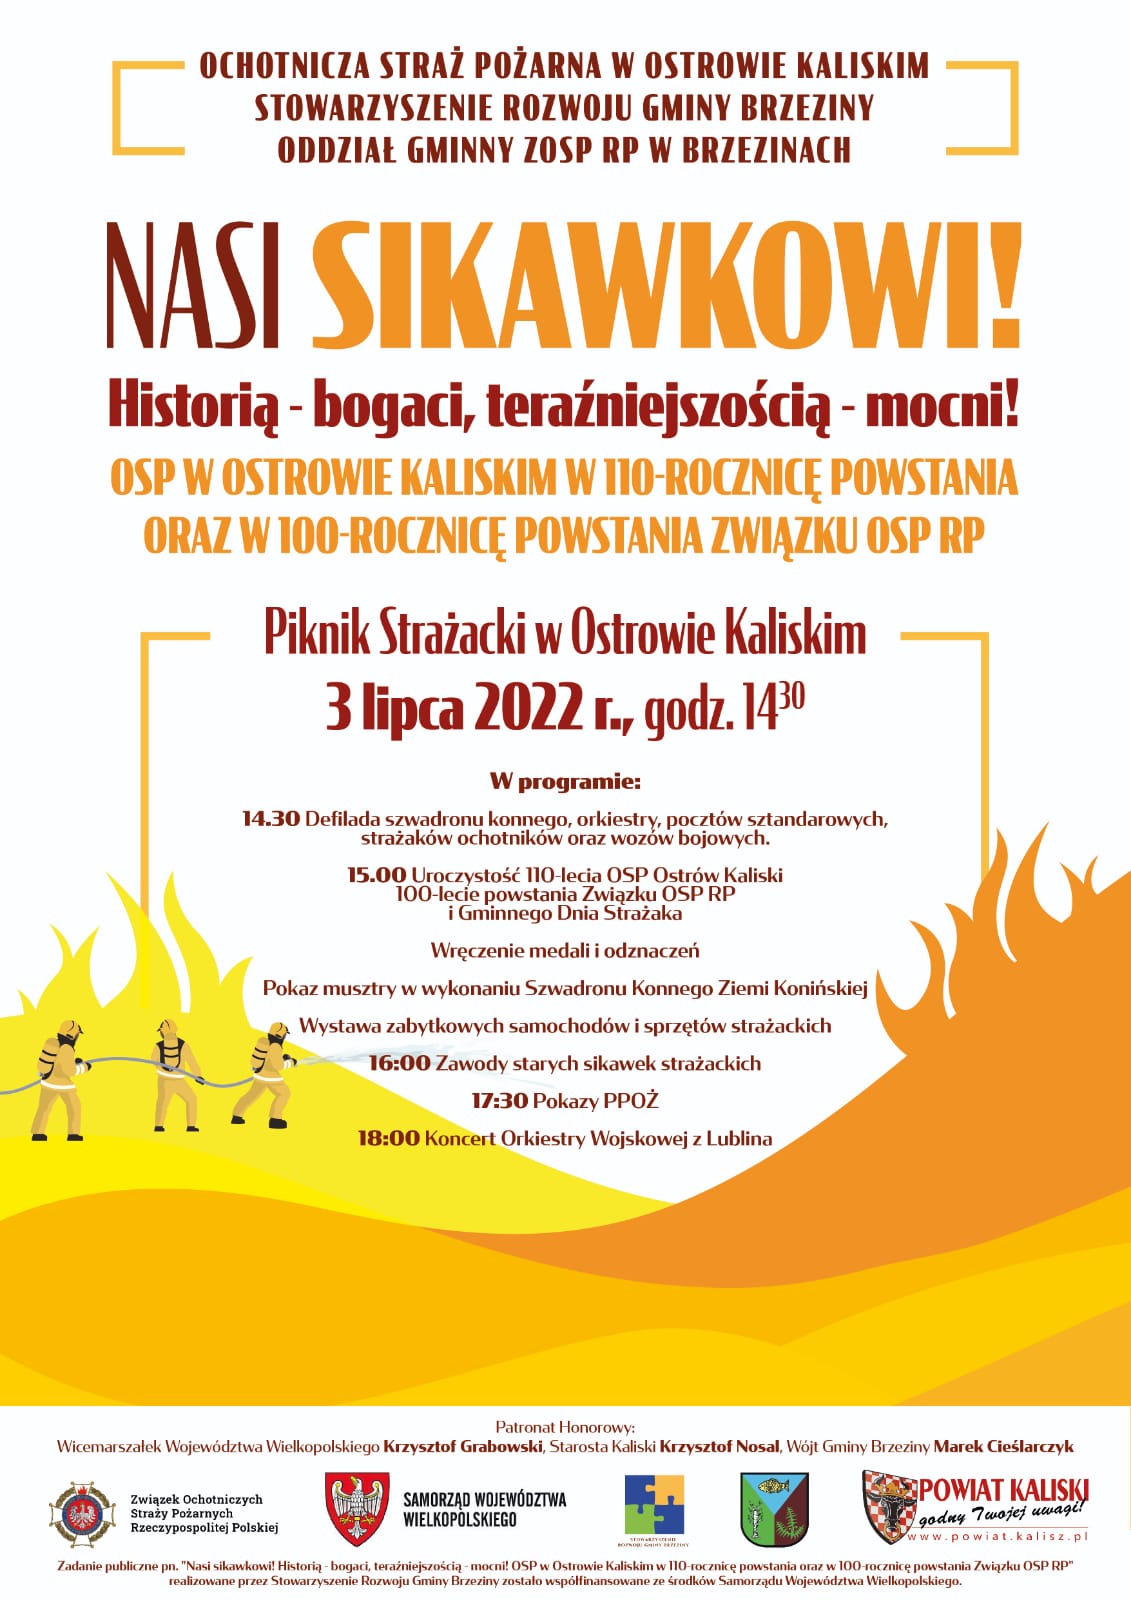 Zaproszenie na piknik strażacki pod nazwą Nasi sikawkowi Historią bogaci teraźniejszością mocni, który odbędzie się 3 lipca 2022 w ostrowie Kaliskim o godzinie 1430